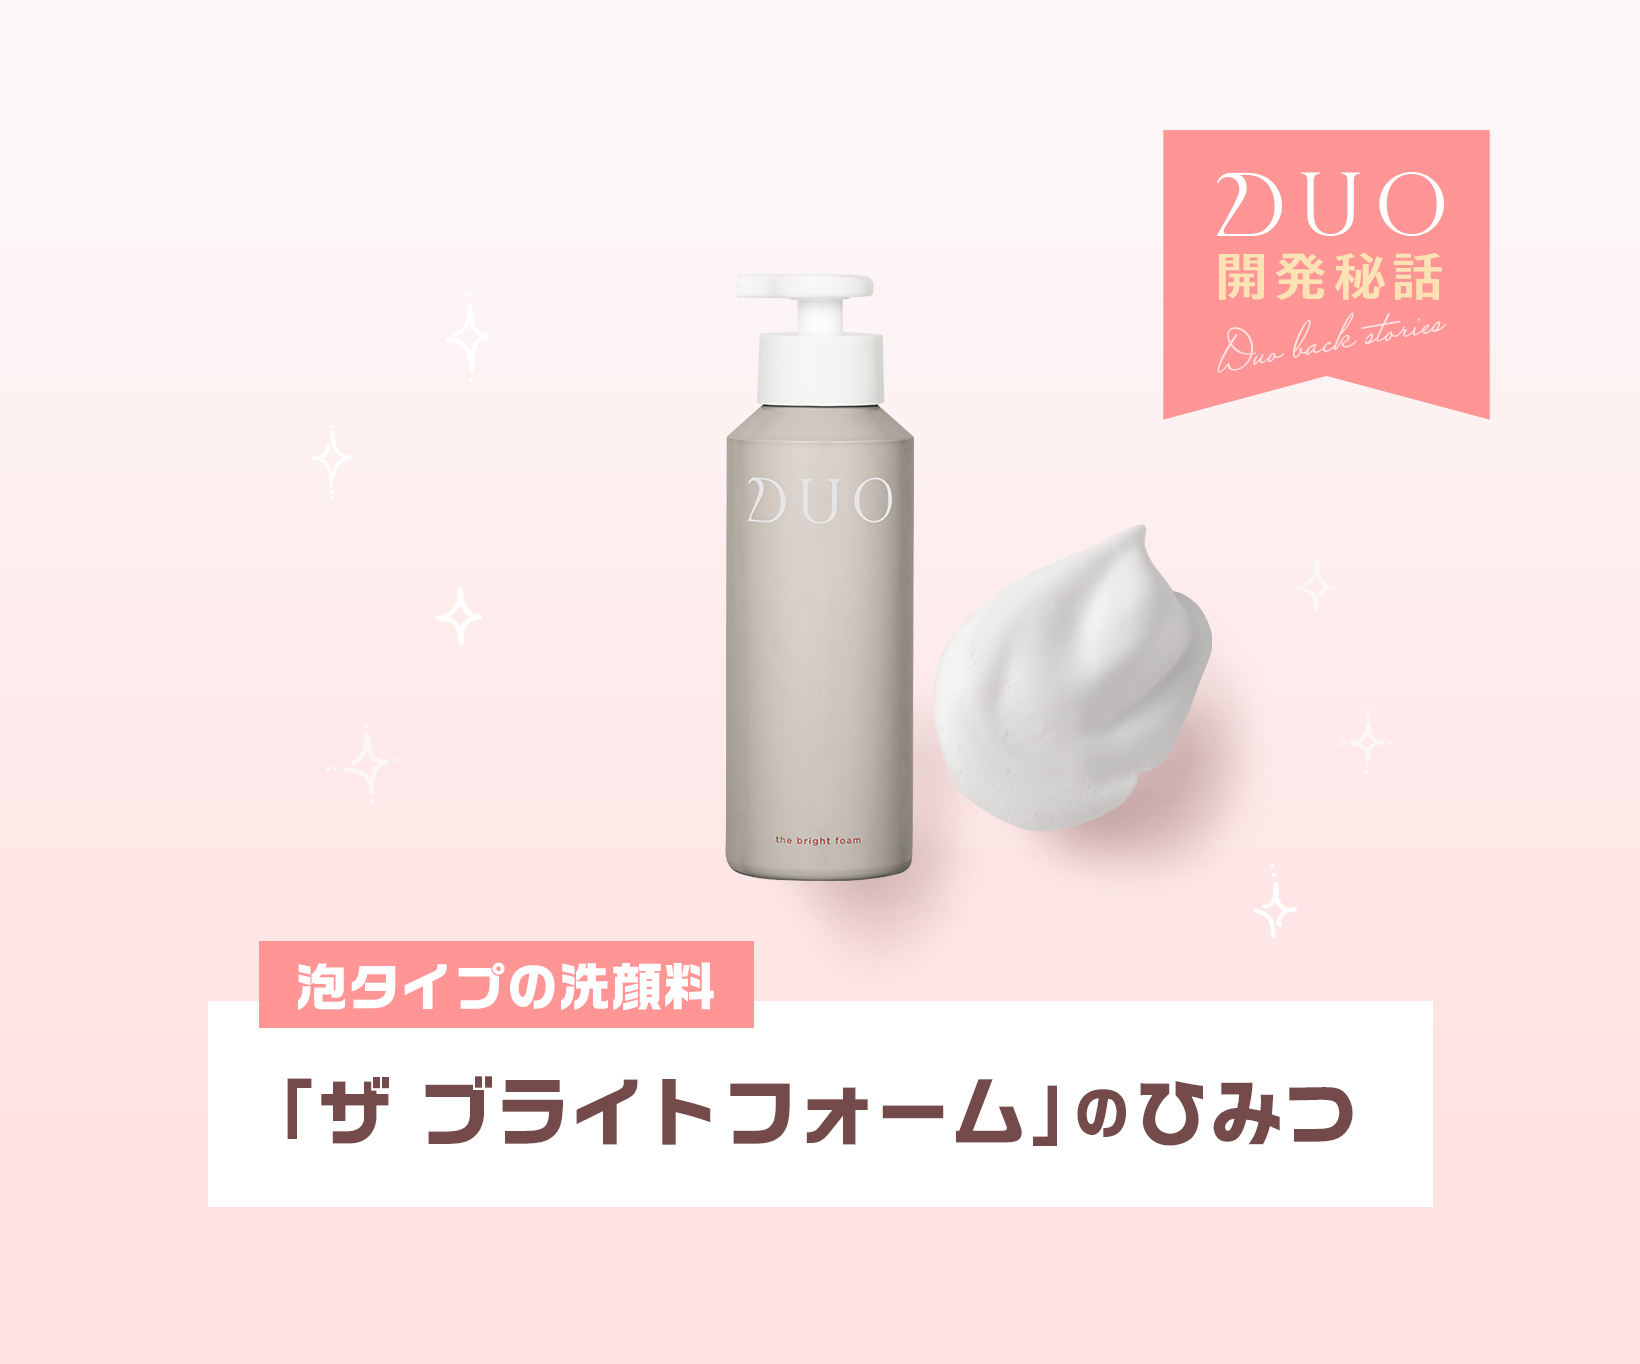 DUO デュオ ザ ブライトフォーム 100g〈泡洗顔〉 ファッション